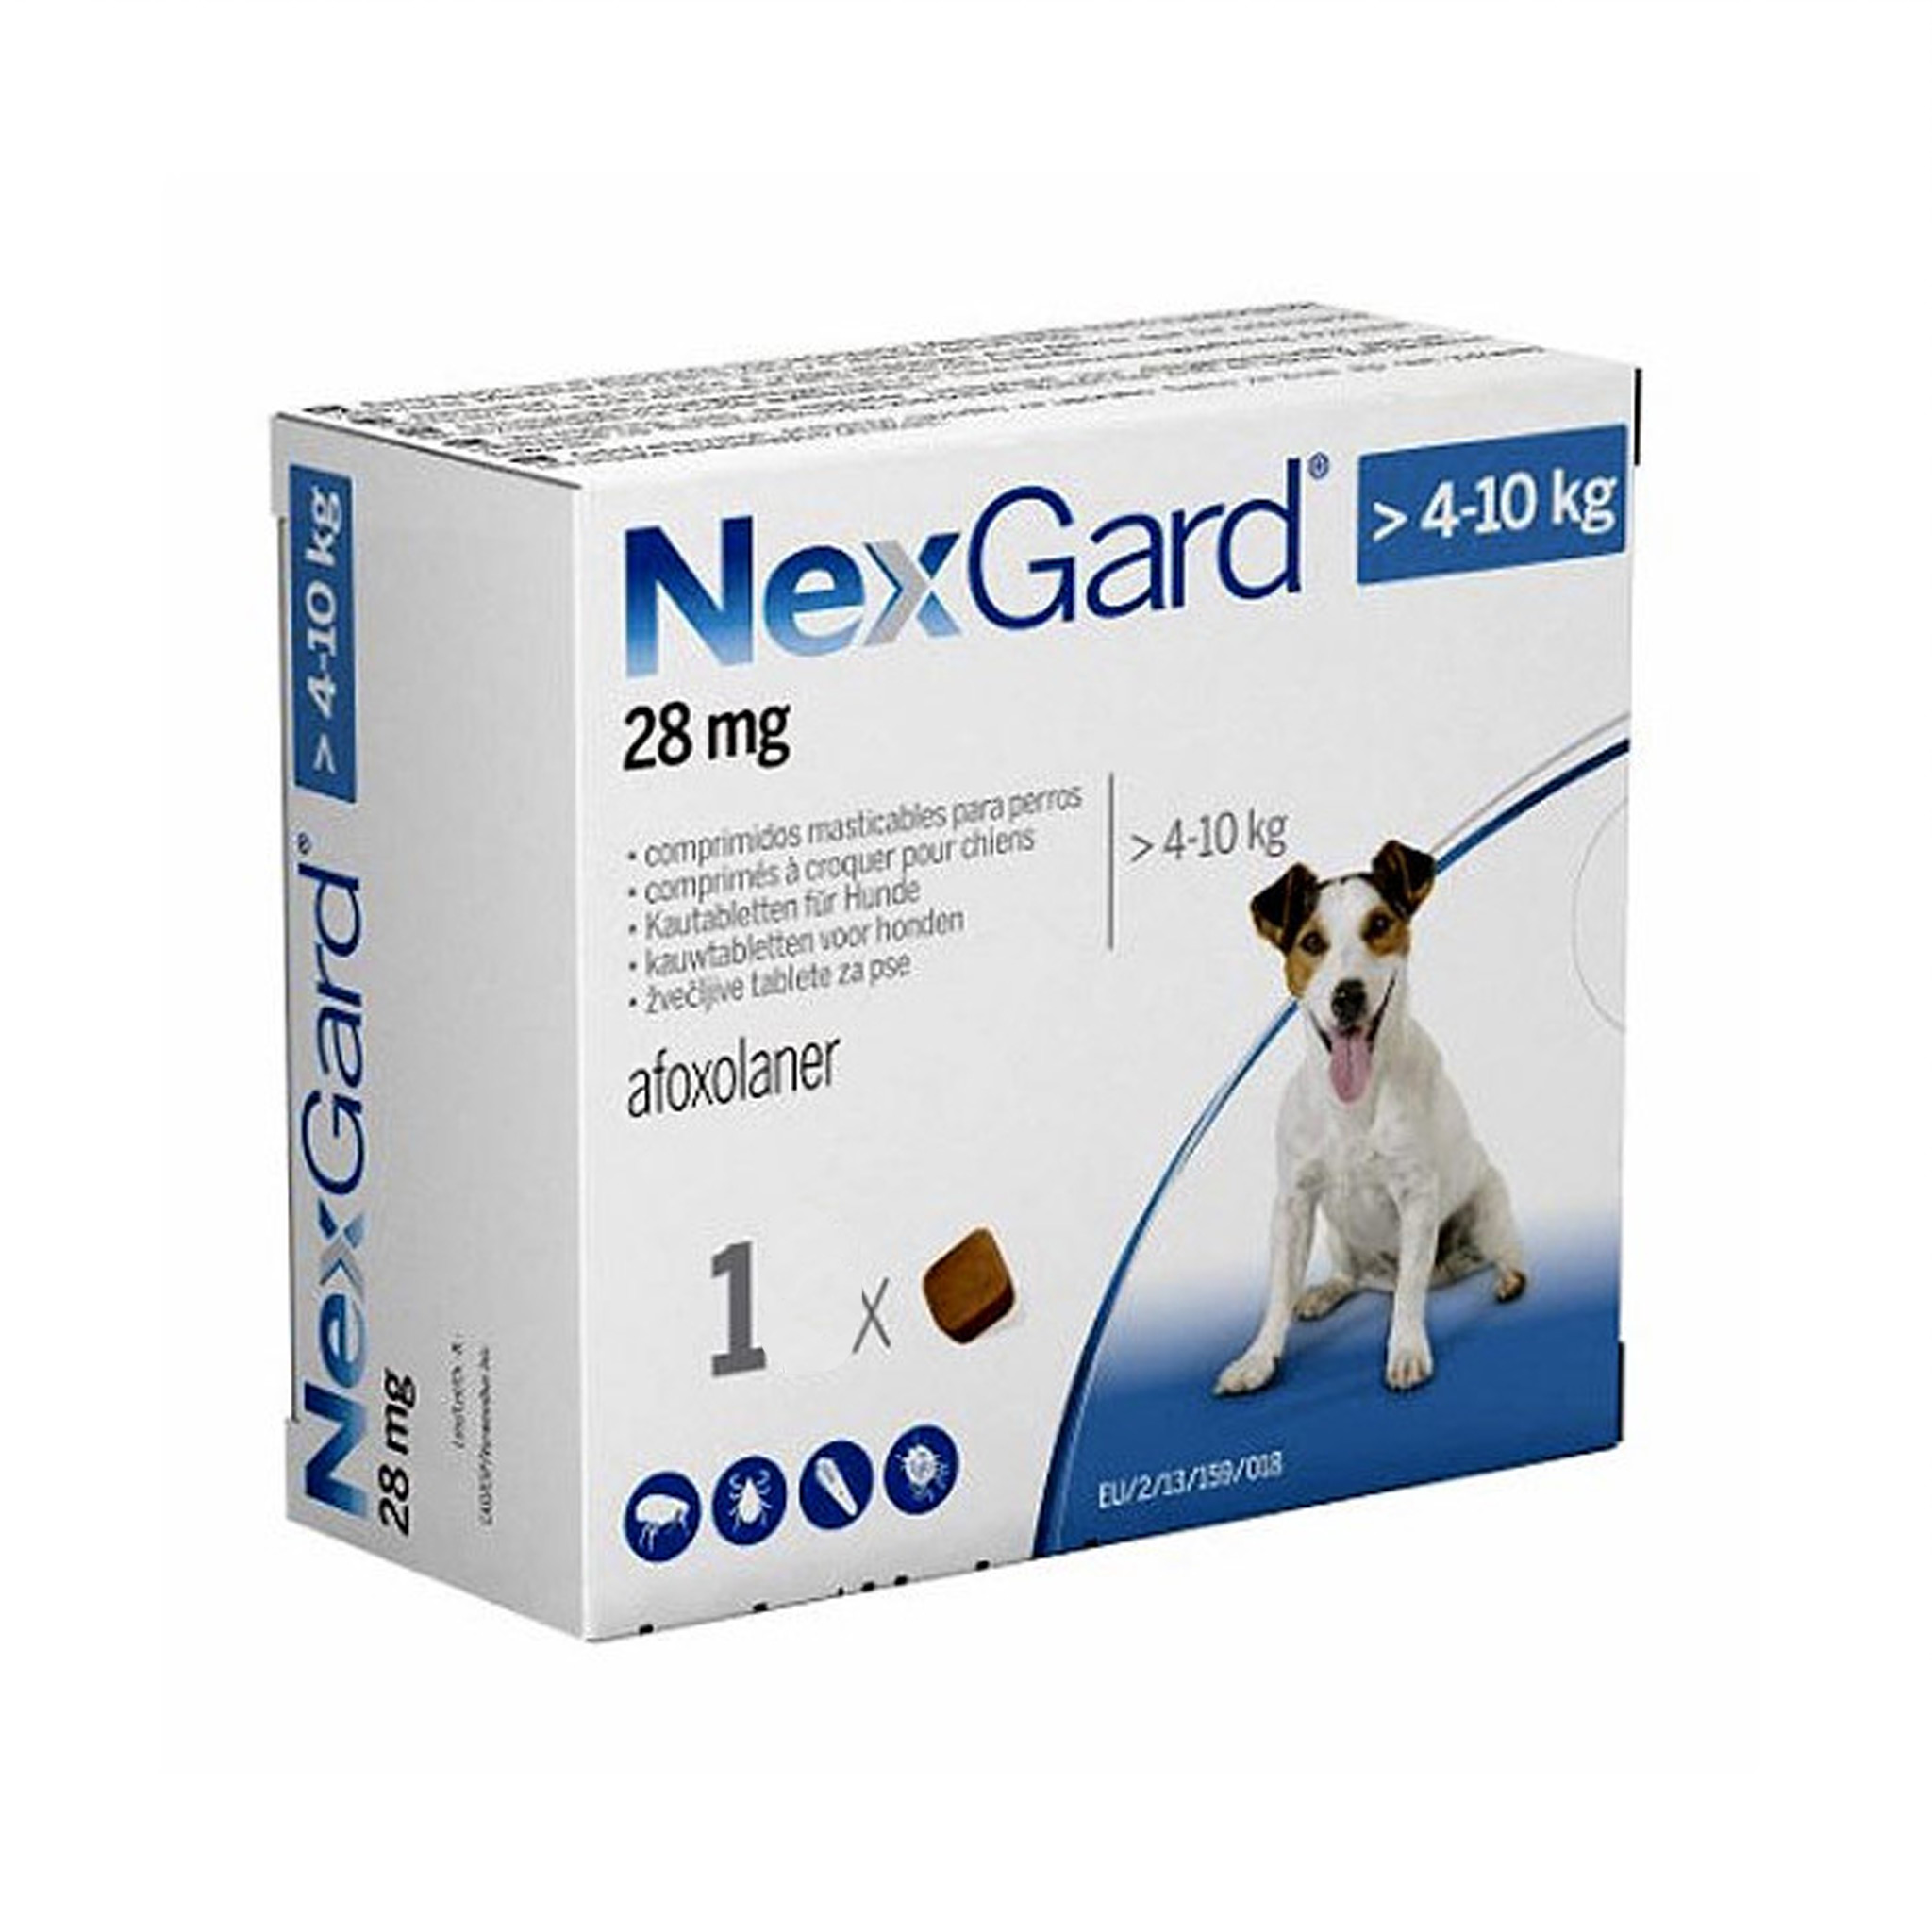 Фронтлайн нексгард 4 1 10 кг. NEXGARD M. NEXGARD Spectra для собак 3 компонентная 1 большая и 2 маленькие. НЕКСГАРД для кошек. NEXGARD Spectra funciona Италия.